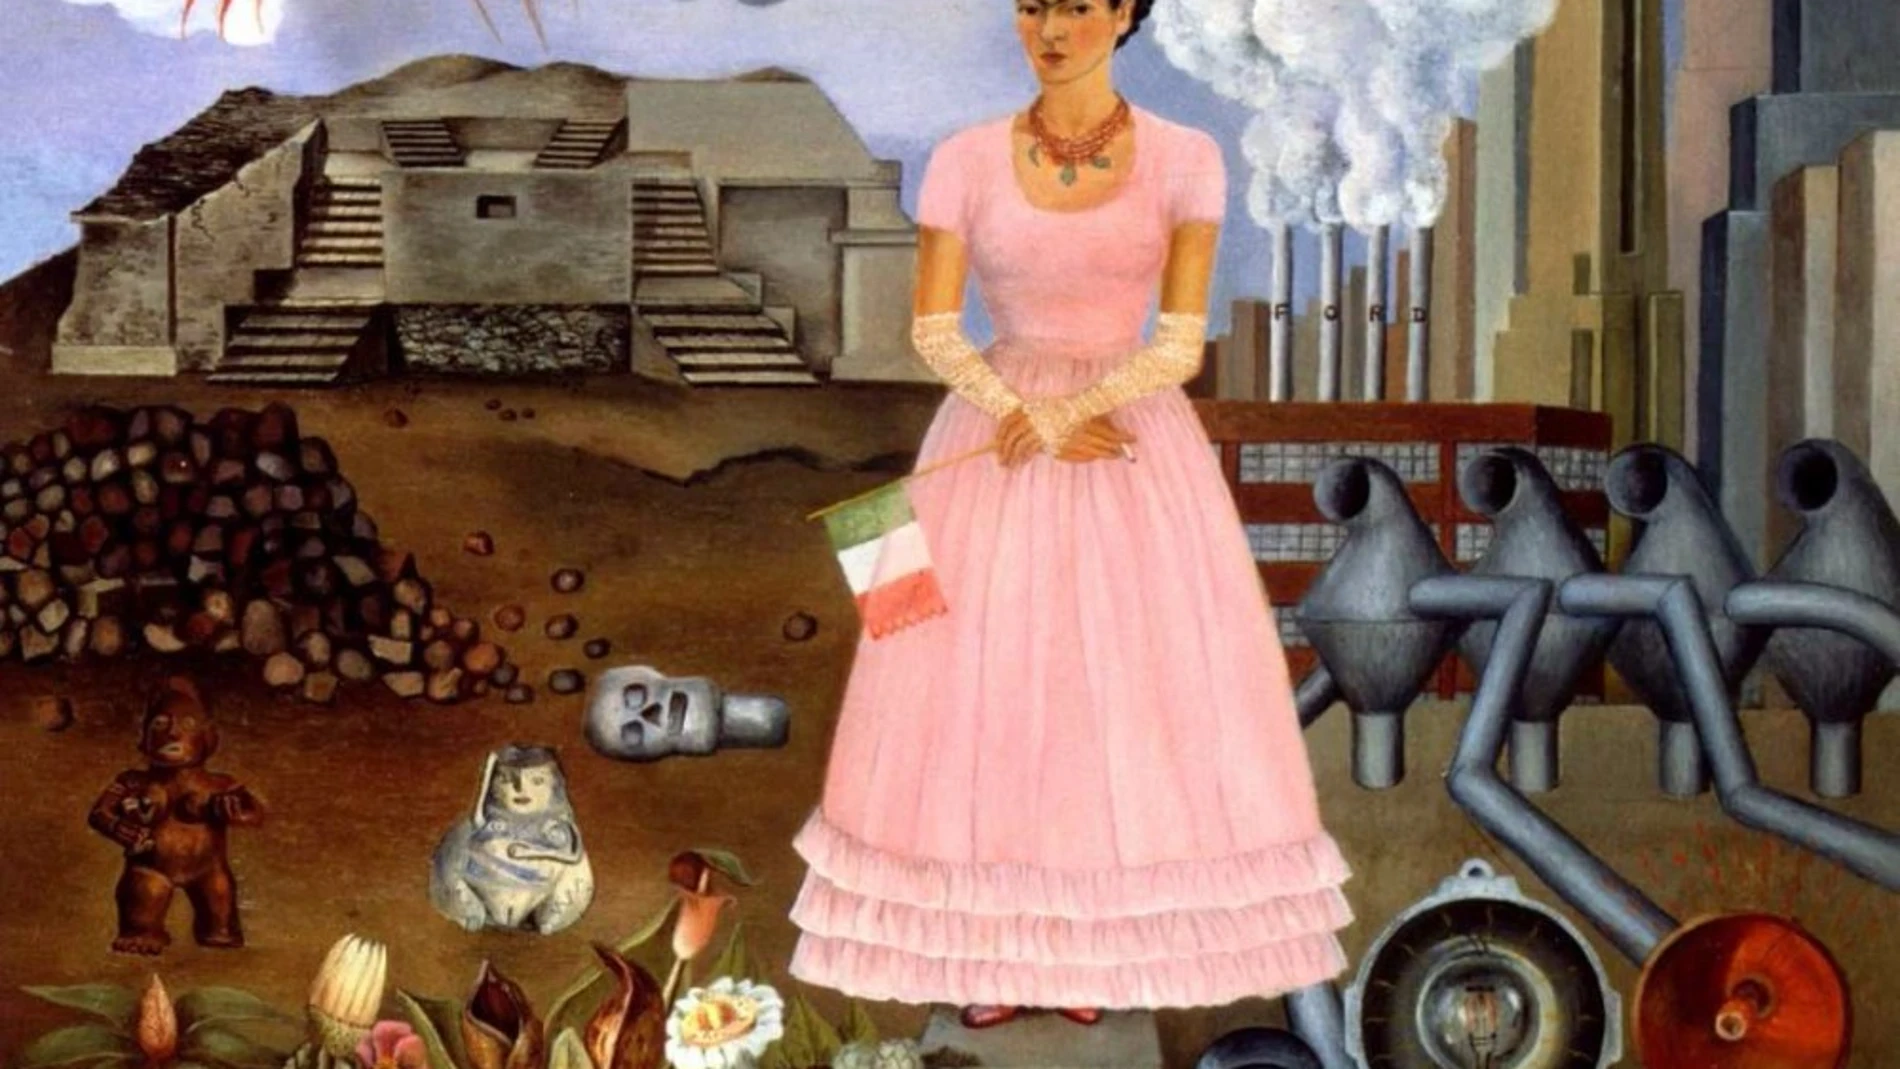 "Autorretrato en la frontera entre México y Estados Unidos", de Frida Kahlo